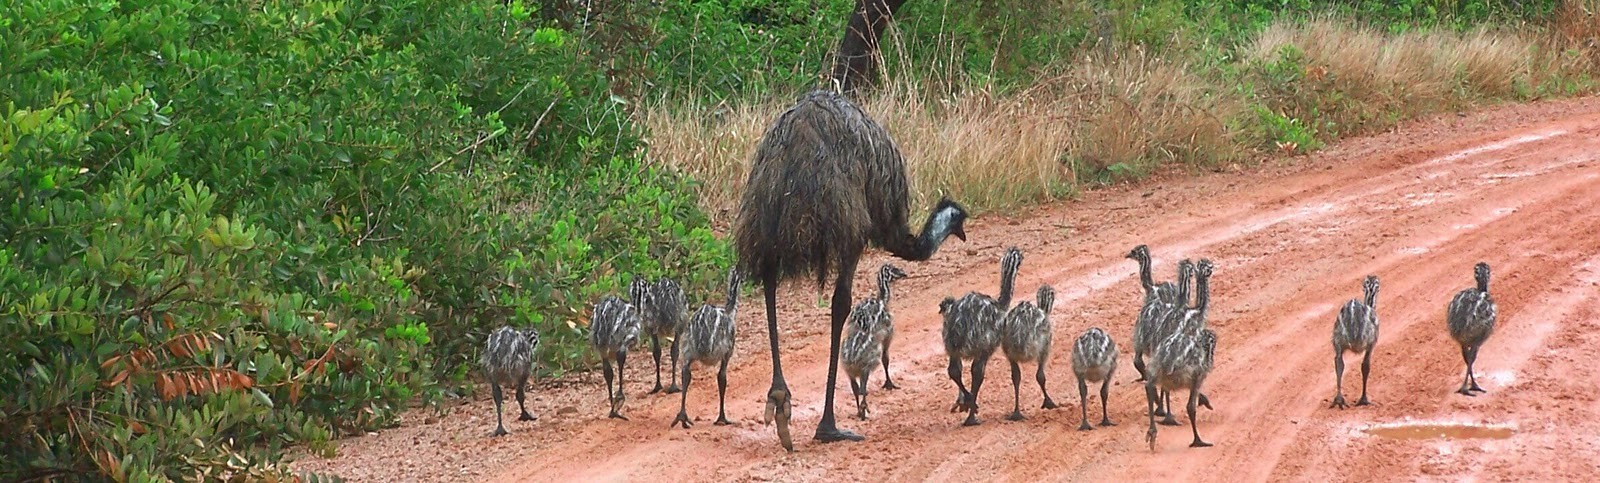 Familia emu